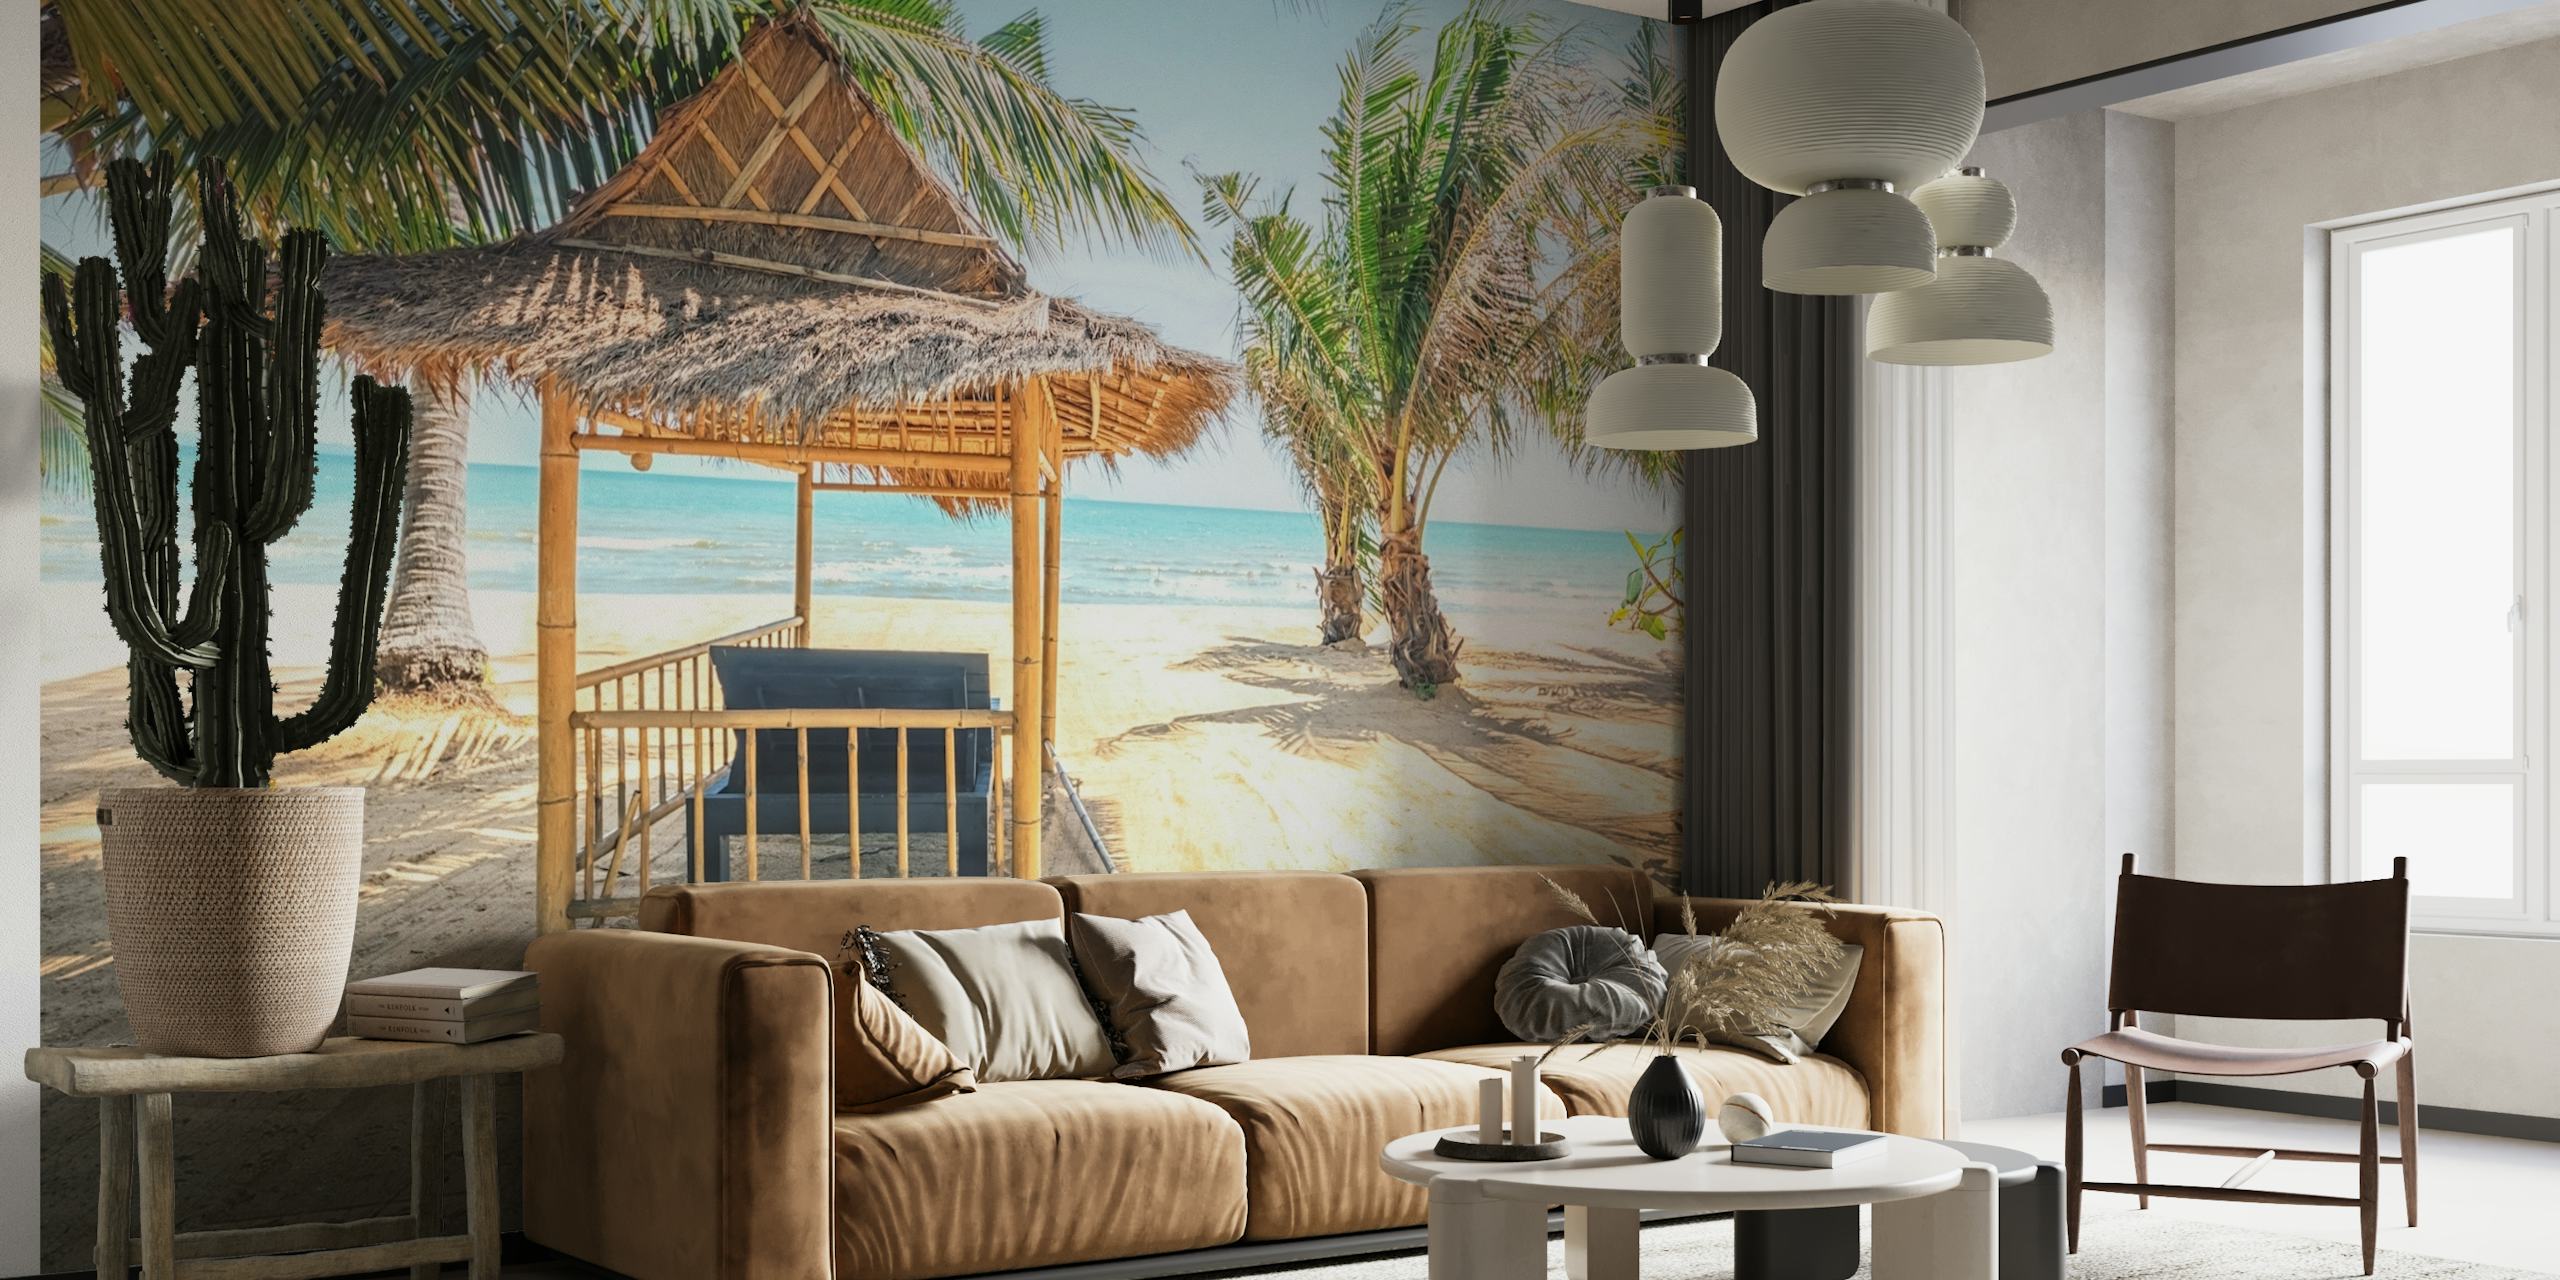 Hytte med stråtak på en sandstrand med palmetrær og veggmaleri med havutsikt